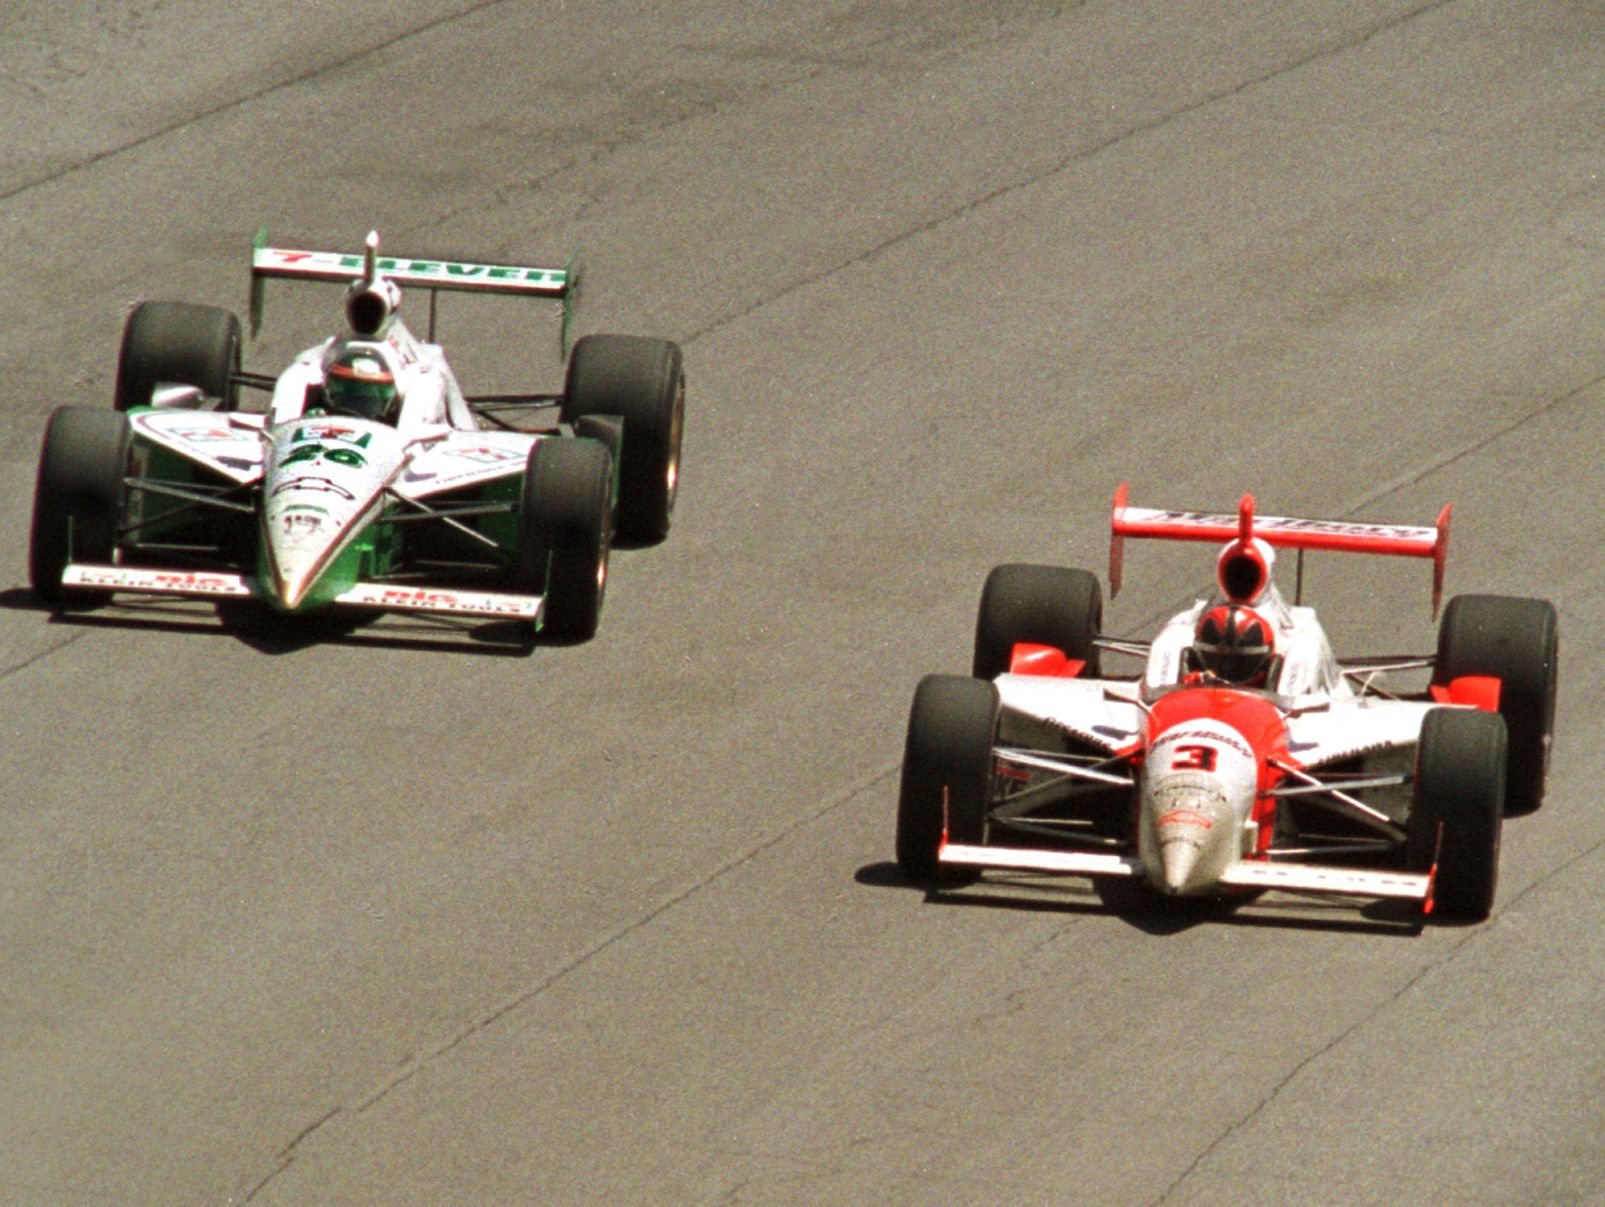 Den omstridte overhaling...(fra venstre mod højre) Paul Tracy, i bil nummer 26, passerer (på ydersiden) nummer 3, Helio Castroneves...I slutningen af løbet.